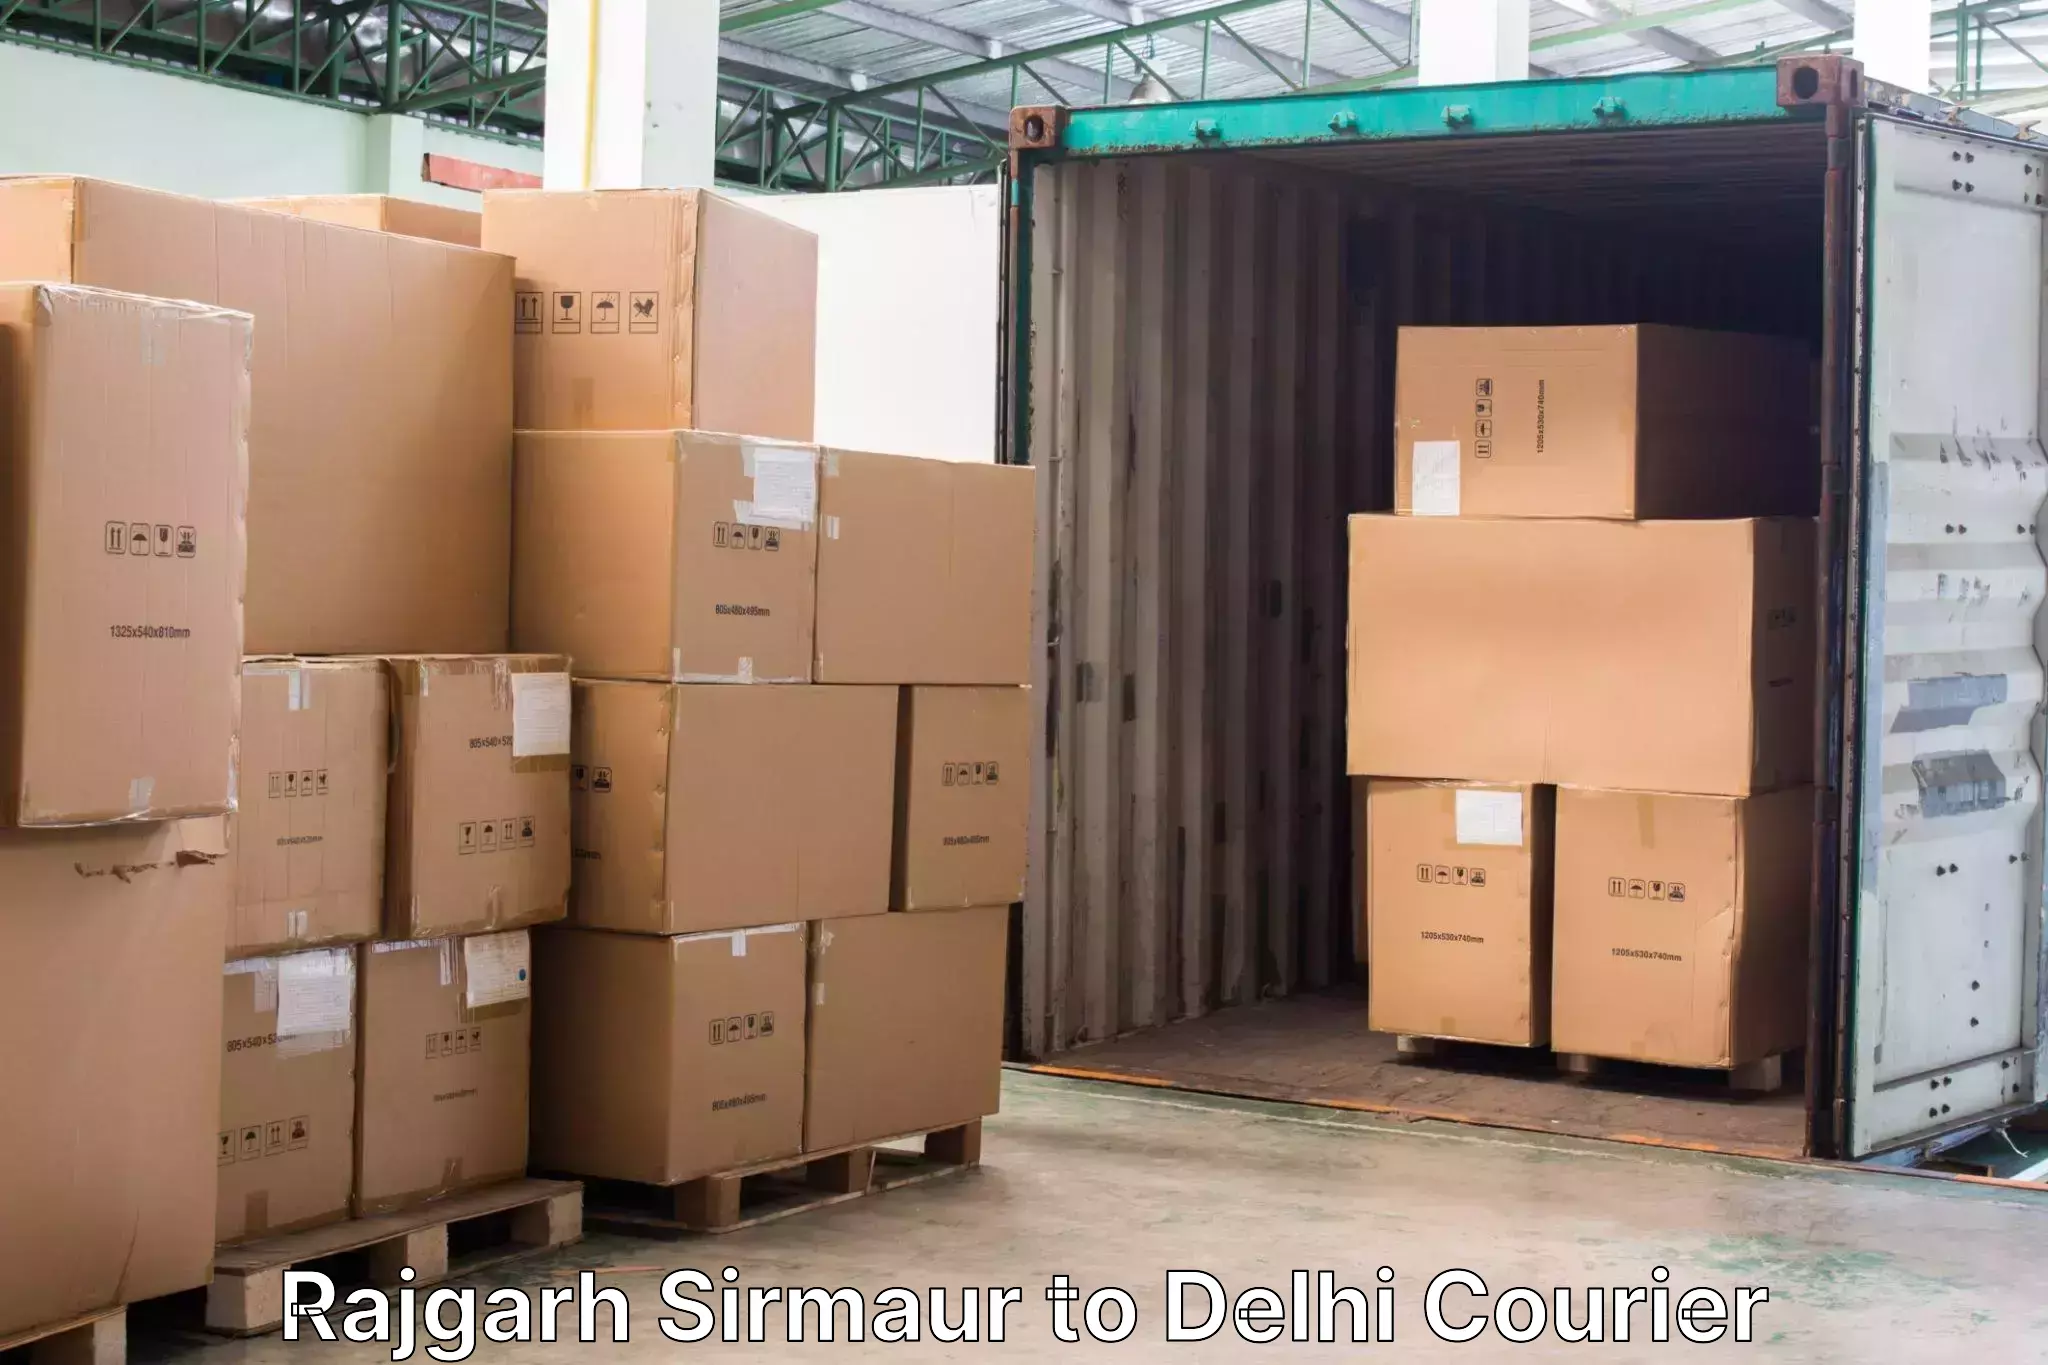 Door-to-door baggage service Rajgarh Sirmaur to IIT Delhi